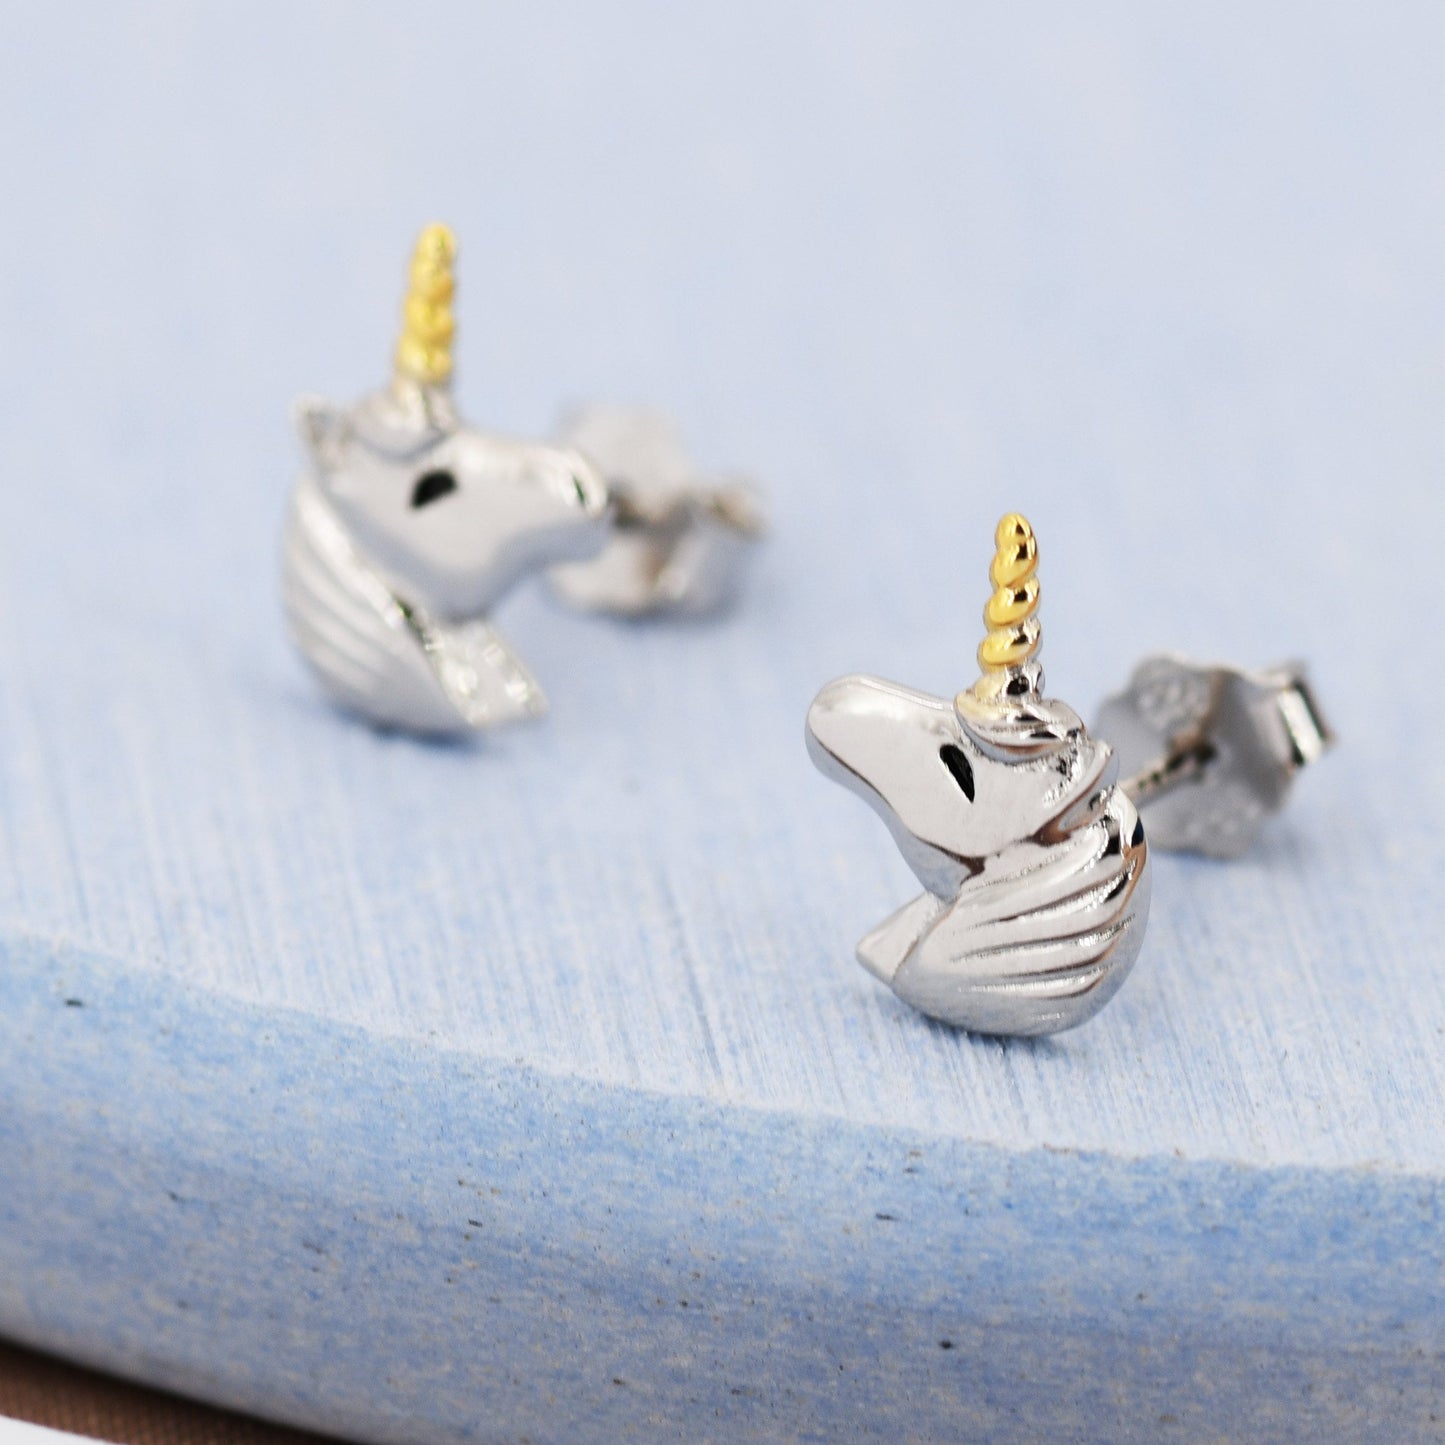 Unicorn Stud Earrings in Sterling Silver, Cute Earrings For Girls, Animal Earrings